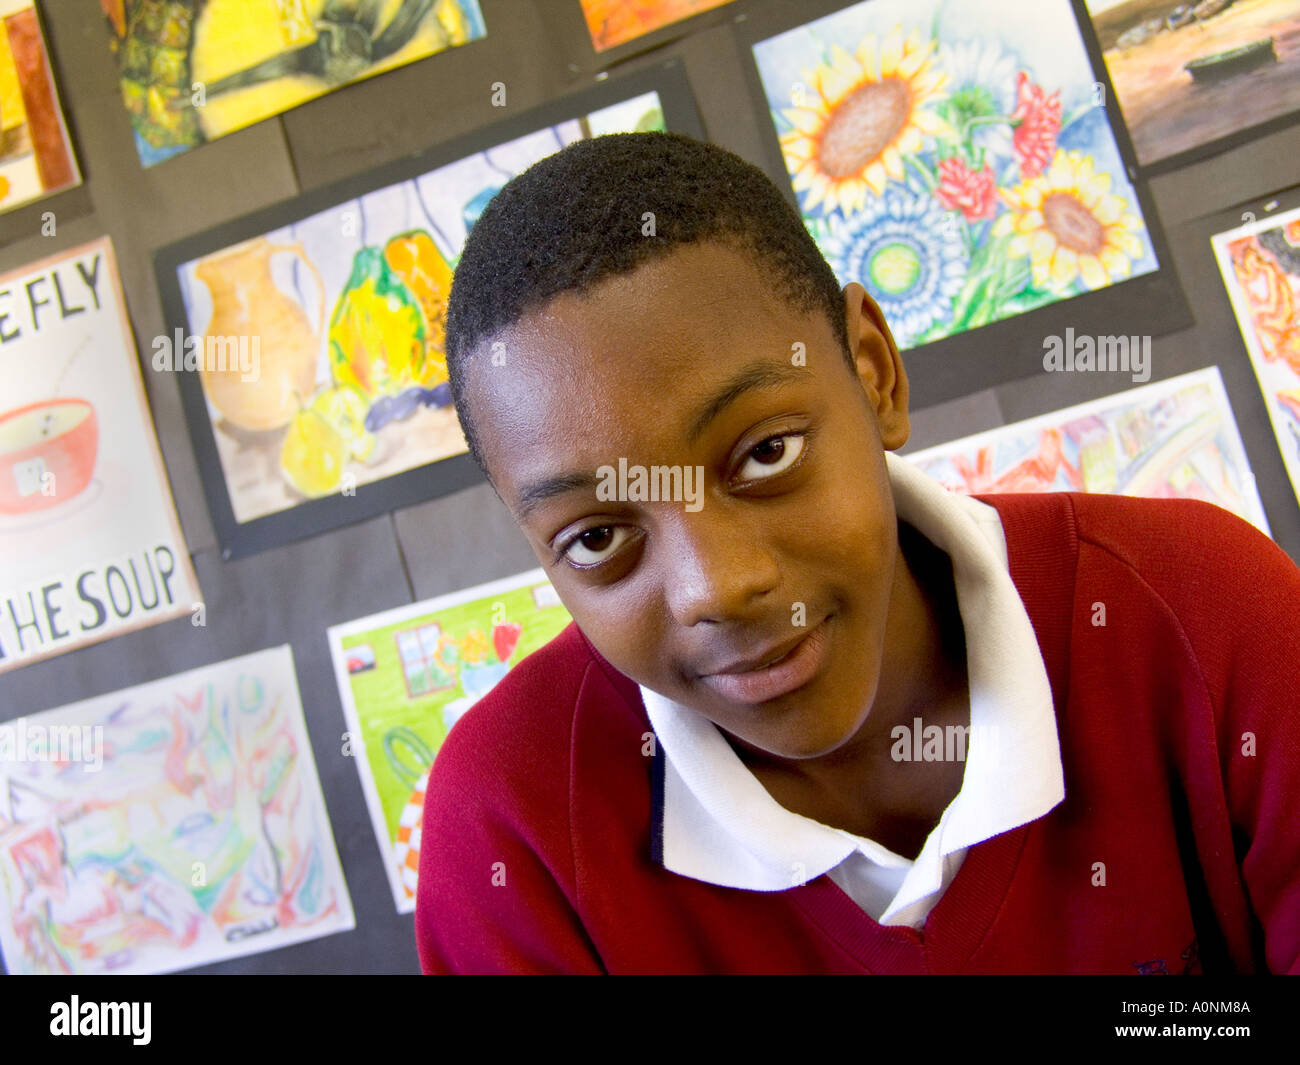 Schuljunge Portait eines selbstbewussten 13-15-jährigen schwarzen Jungen im Teenageralter im Klassenzimmer mit seinen Gemälden im Hintergrund Stockfoto